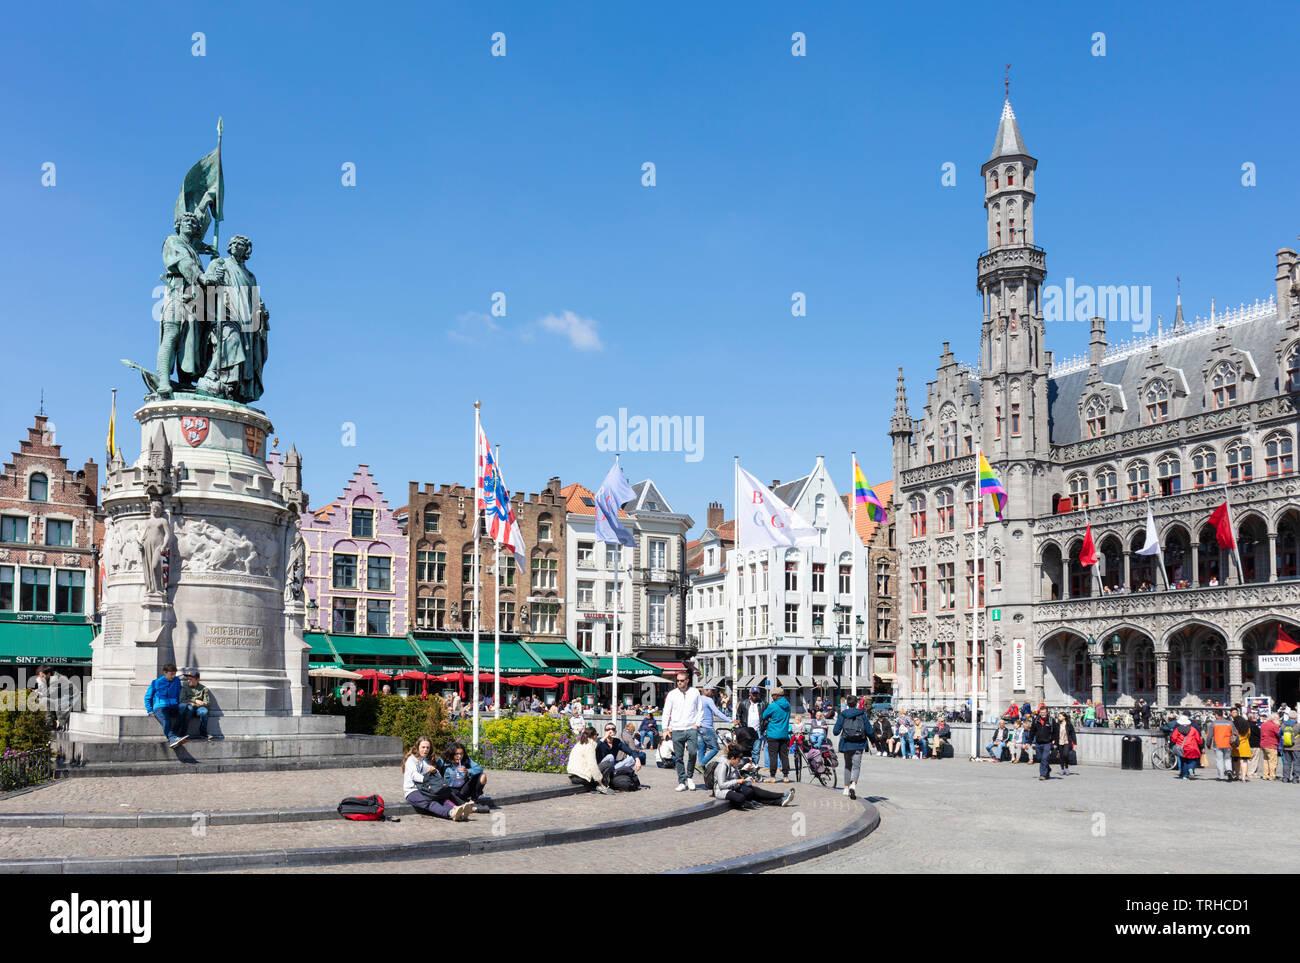 Gli edifici di vecchia costruzione ornato di gables dietro la statua di Jan breydal e Pieter De Coninck nella storica piazza del mercato Markt Bruges Belgio UE Europa Foto Stock